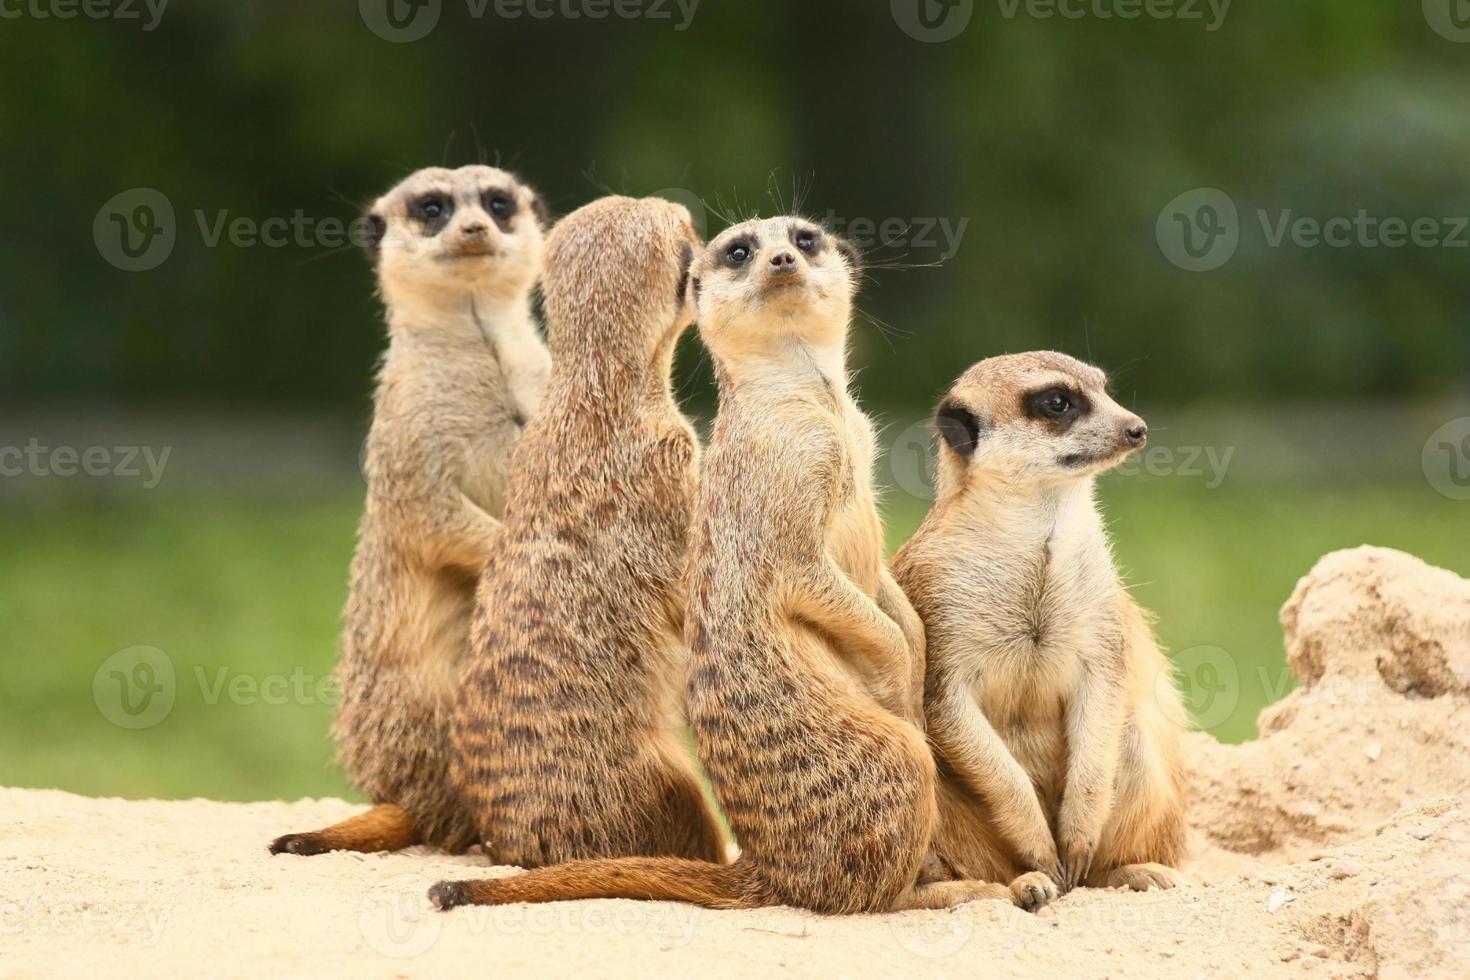 grupp meerkats på den gröna bakgrunden foto